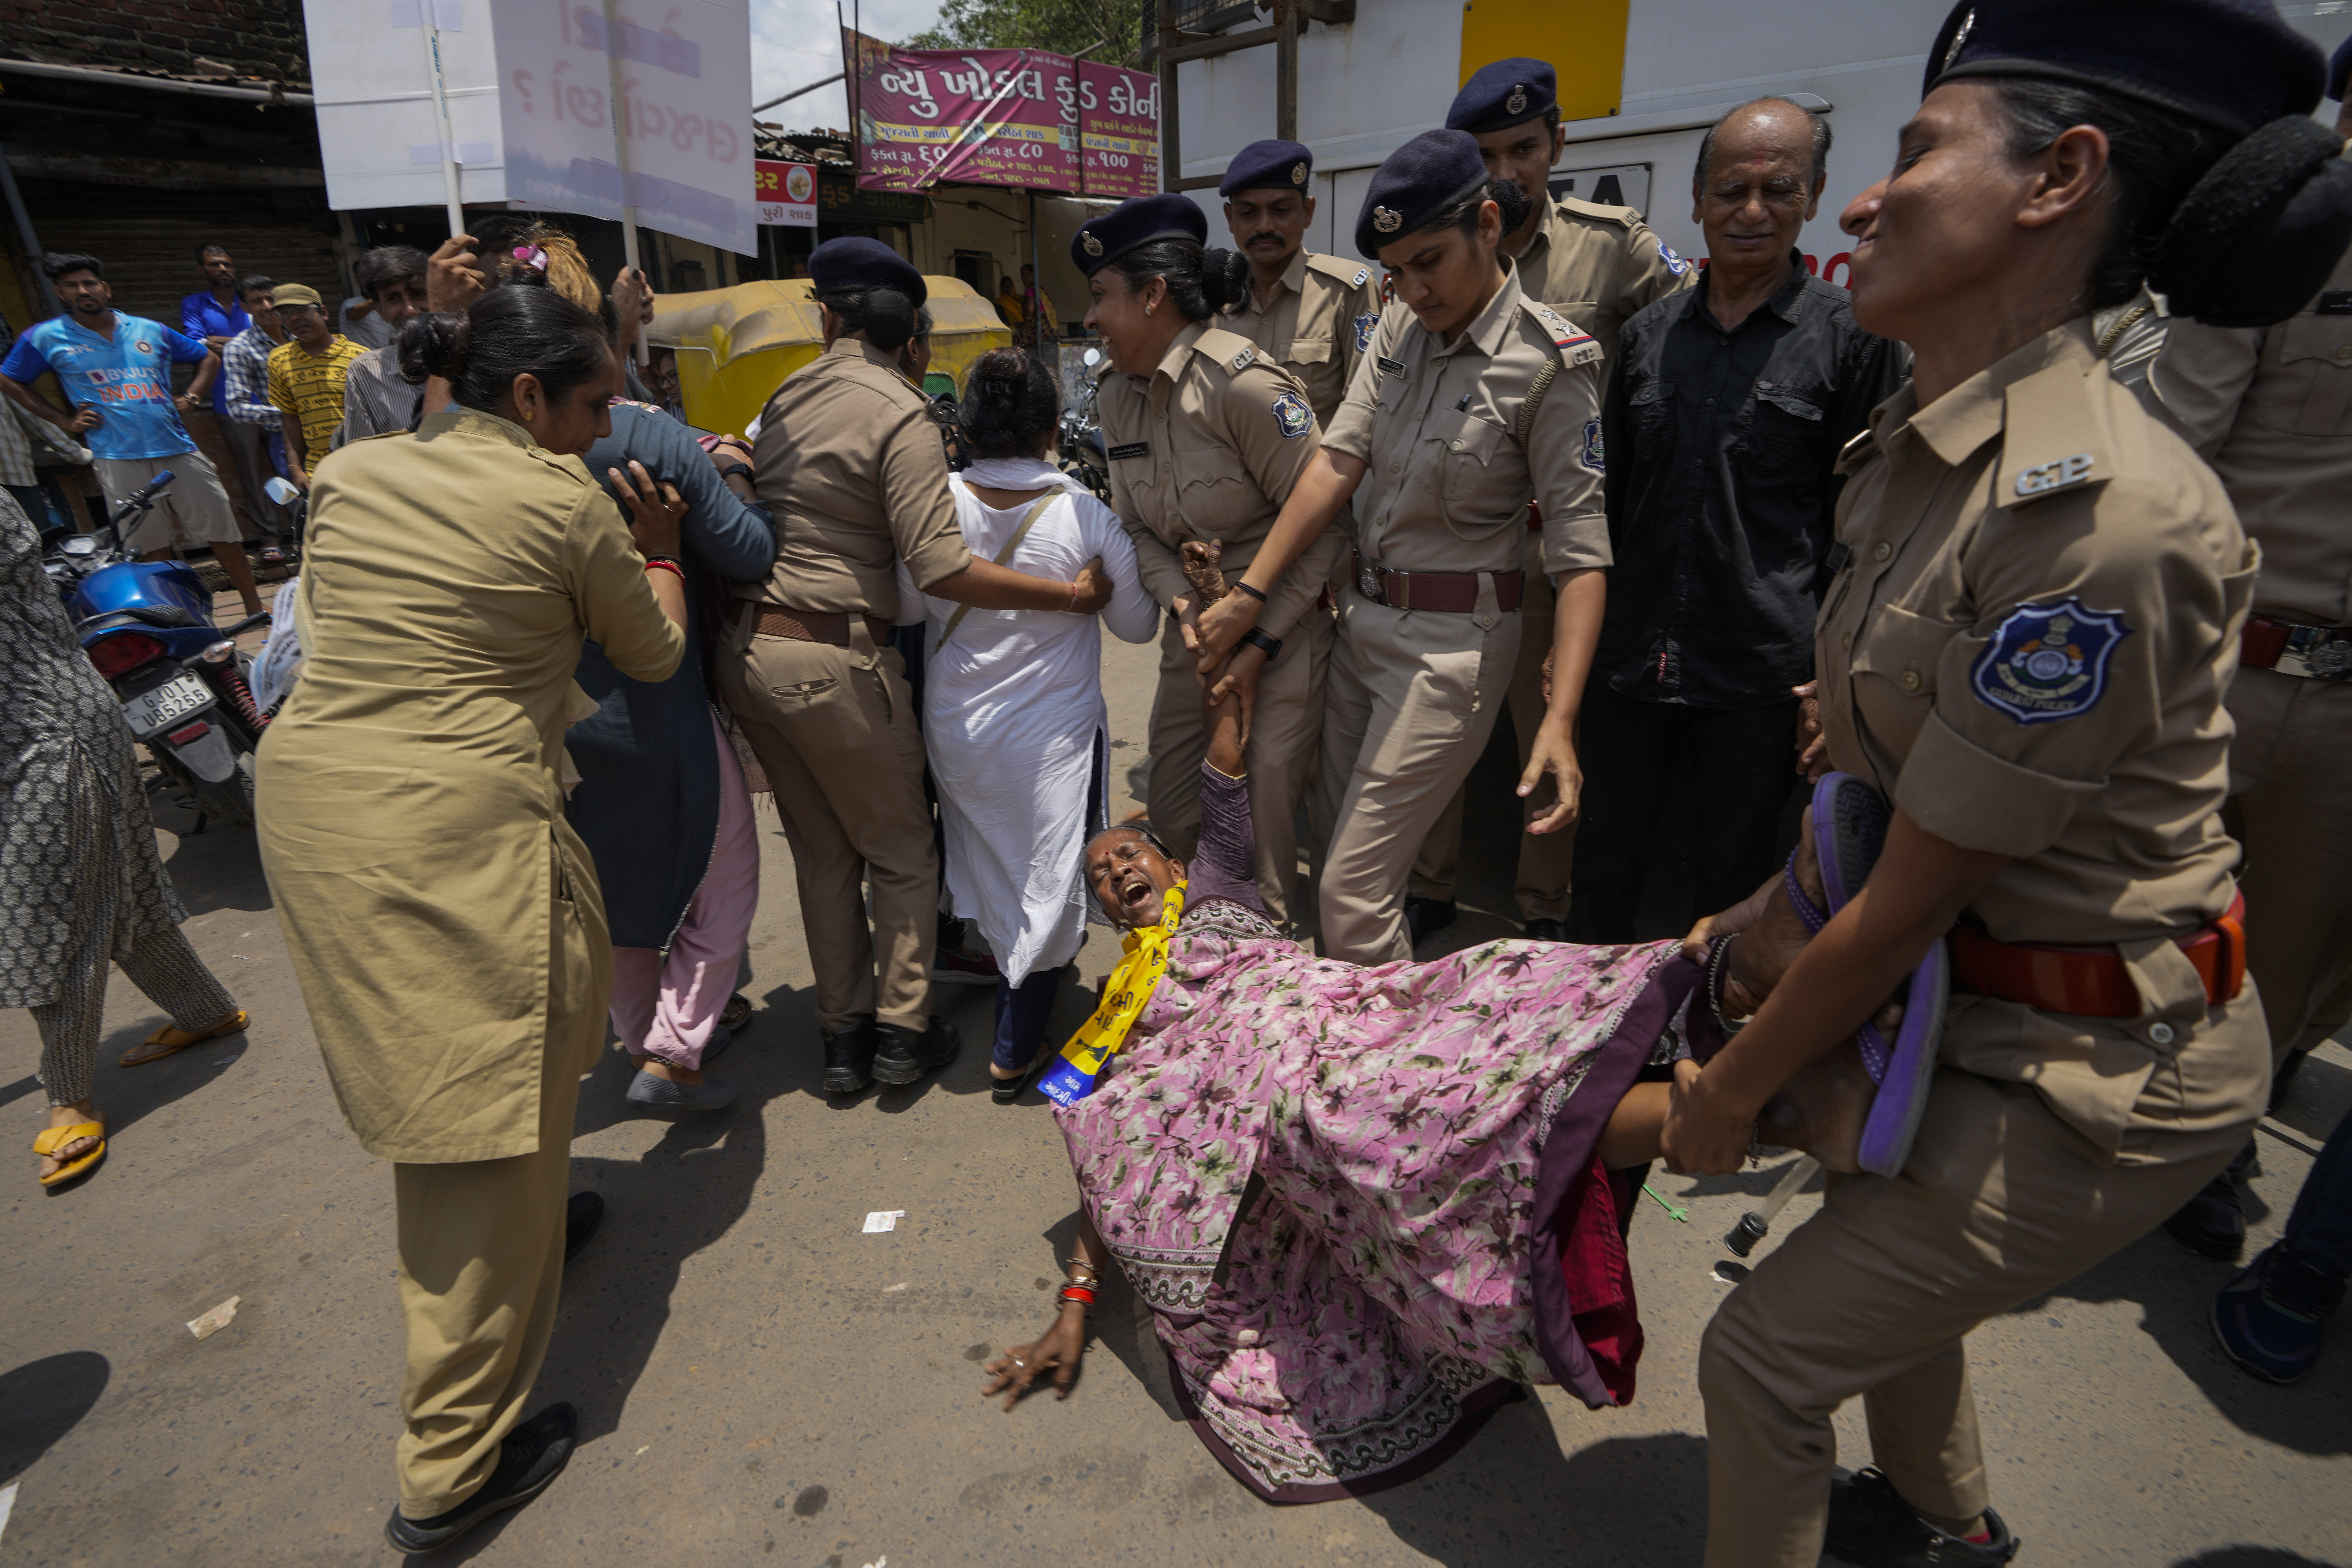 Polizisten nehmen eine Frau während einer Protestaktion gegen die Gewalt fest